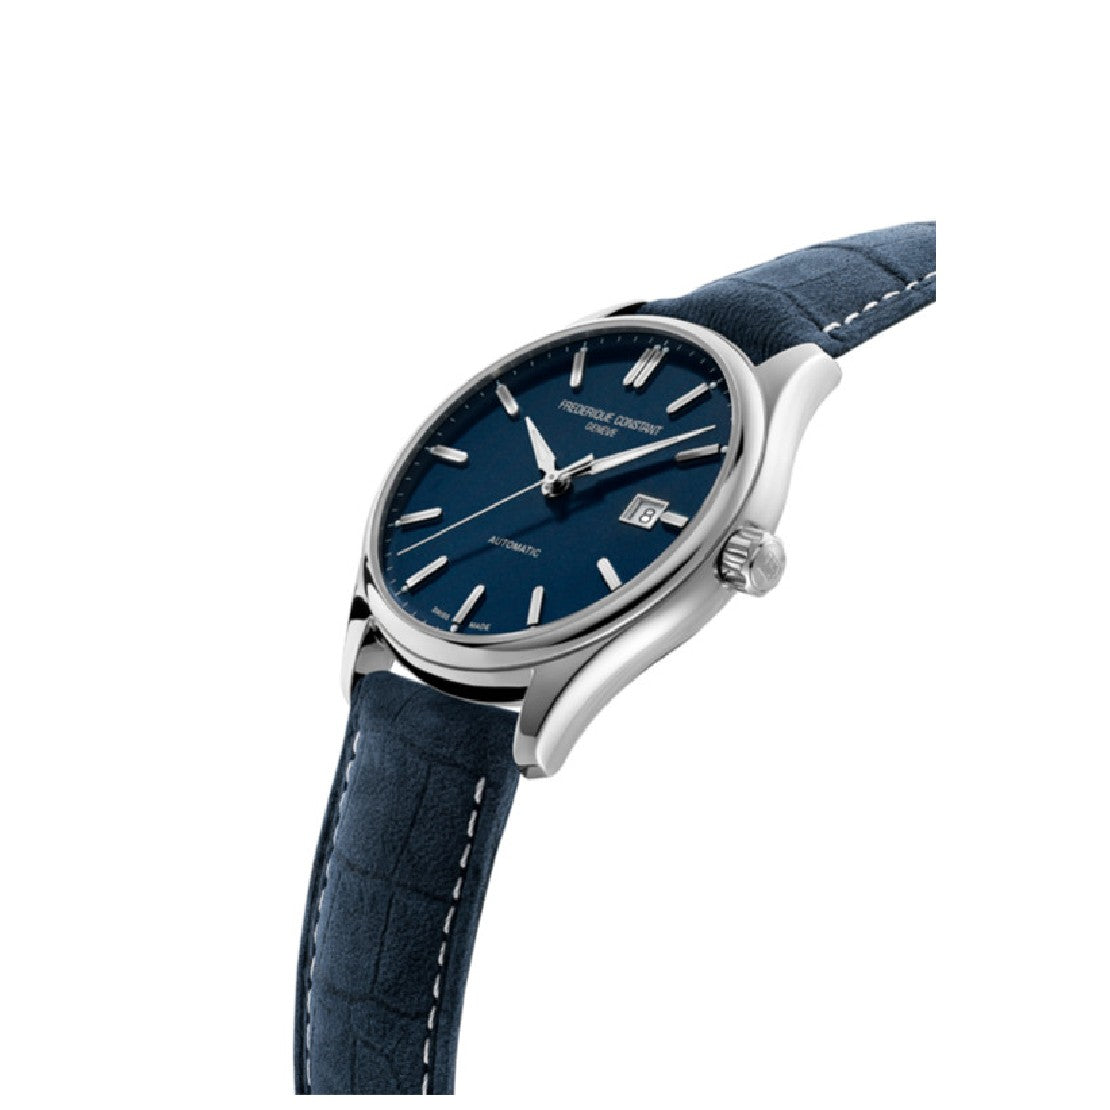 ساعة فريدريك كونستانت الرجالية بحركة أوتوماتيكية ولون مينا أزرق - FC-0203